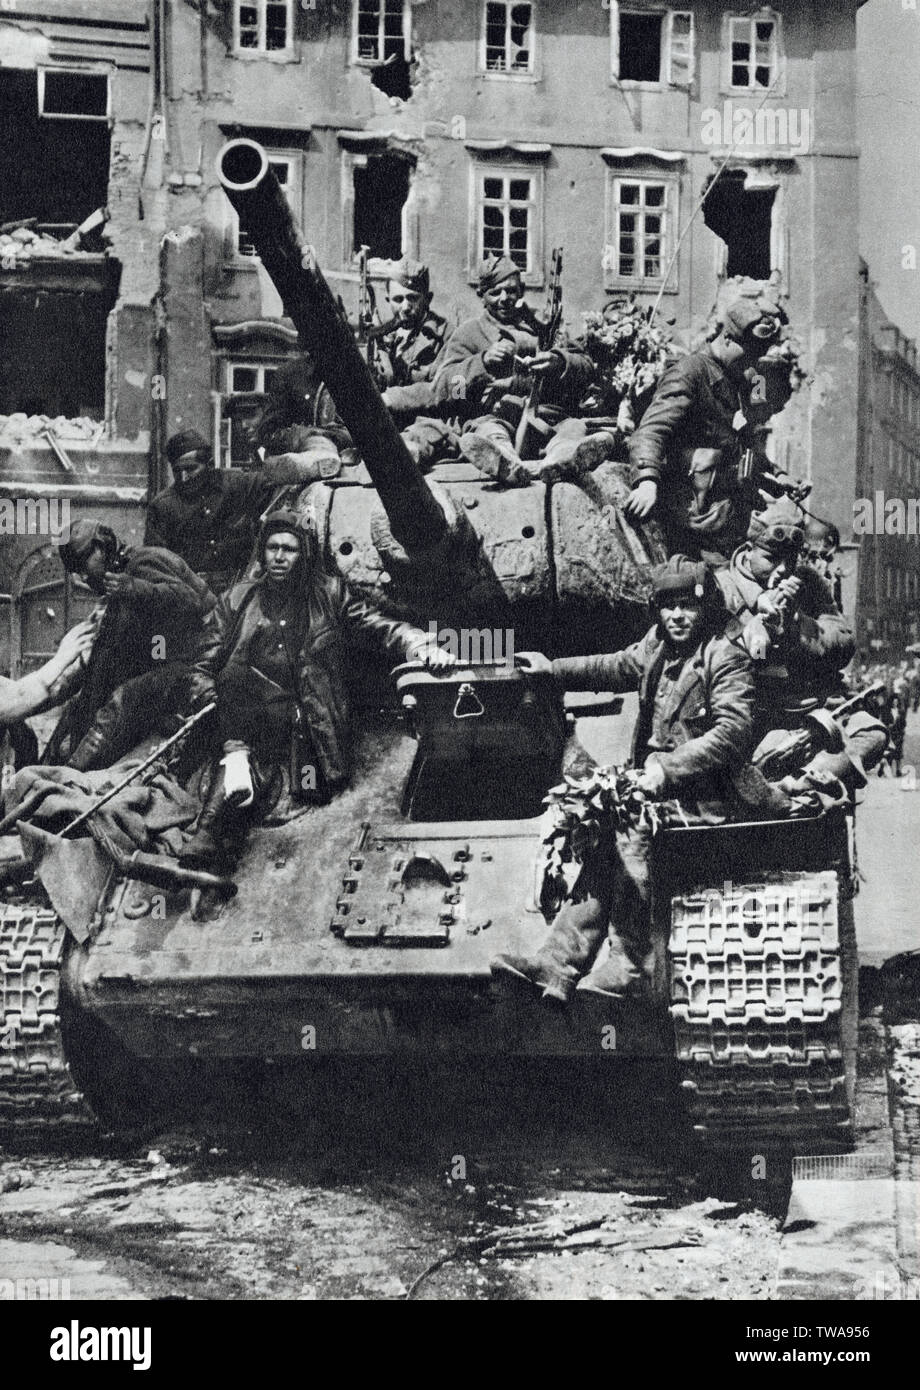 Armata rossa serbatoio T-34 in Praga, Cecoslovacchia, nel maggio 1945. Fotografia in bianco e nero dal fotografo ceca J.Krabičková pubblicato nel libro cecoslovacco " per i tempi di eterna" ("Na věčné časy") rilasciata nel 1959. La cortesia dell'Azoor Raccolta foto. Foto Stock